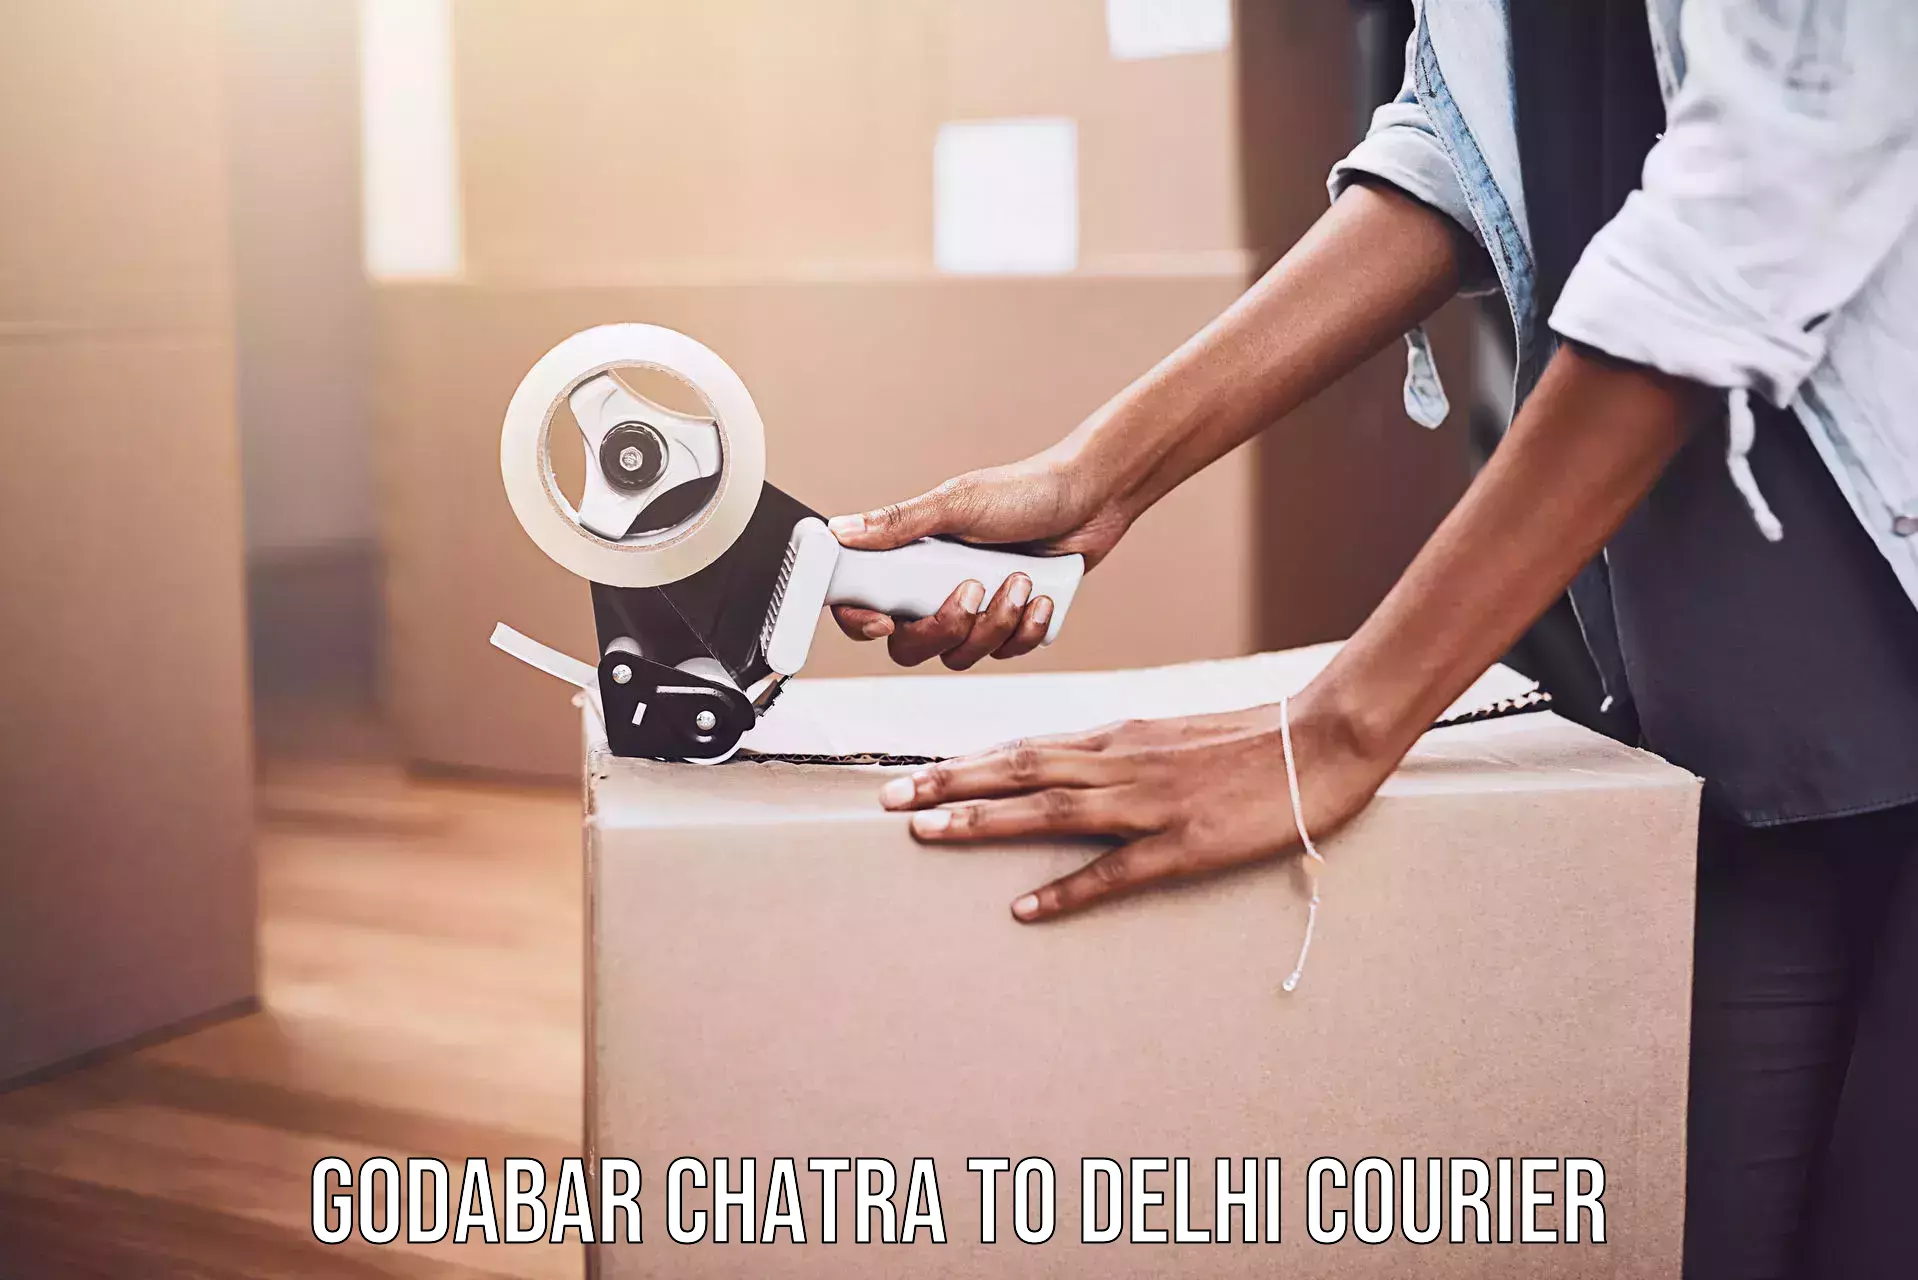 Cargo courier service Godabar Chatra to Jamia Hamdard New Delhi